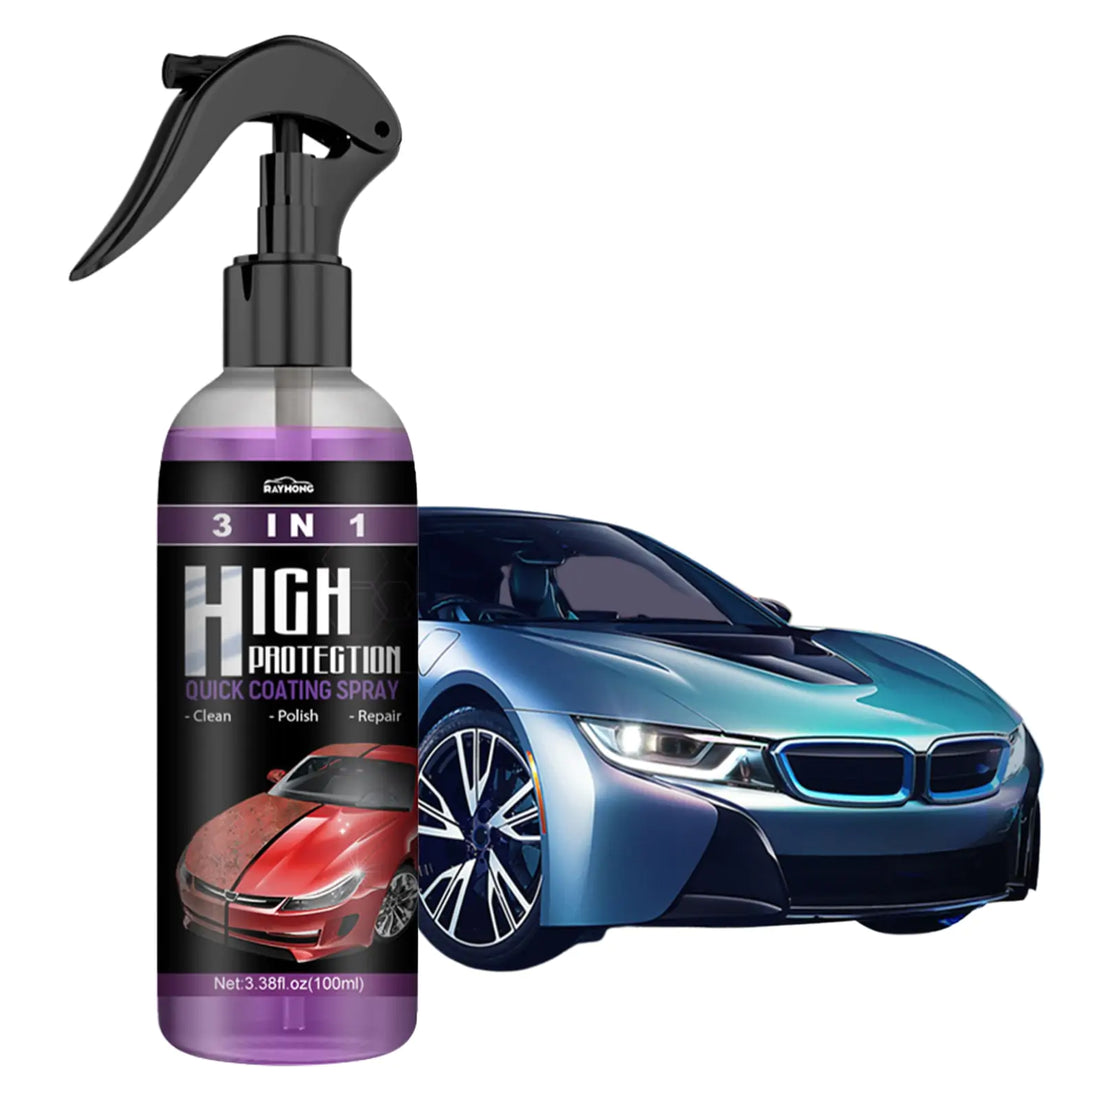 Spray de recubrimiento rápido para automóviles